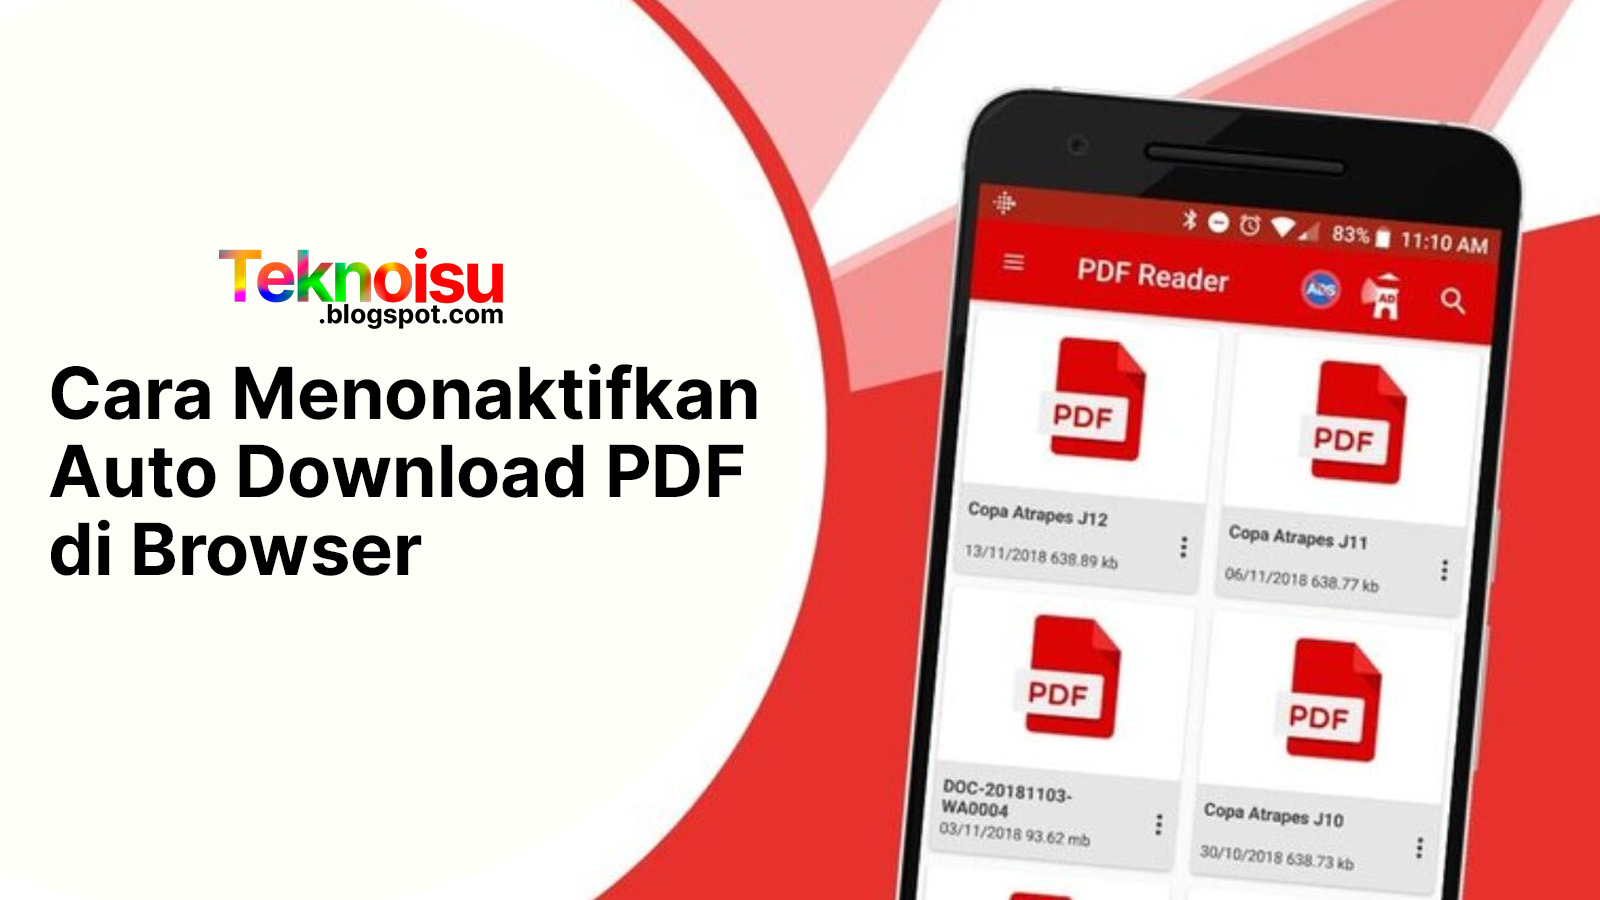 Cara Nonaktifkan Auto Download PDF di Browser Lewat IDM